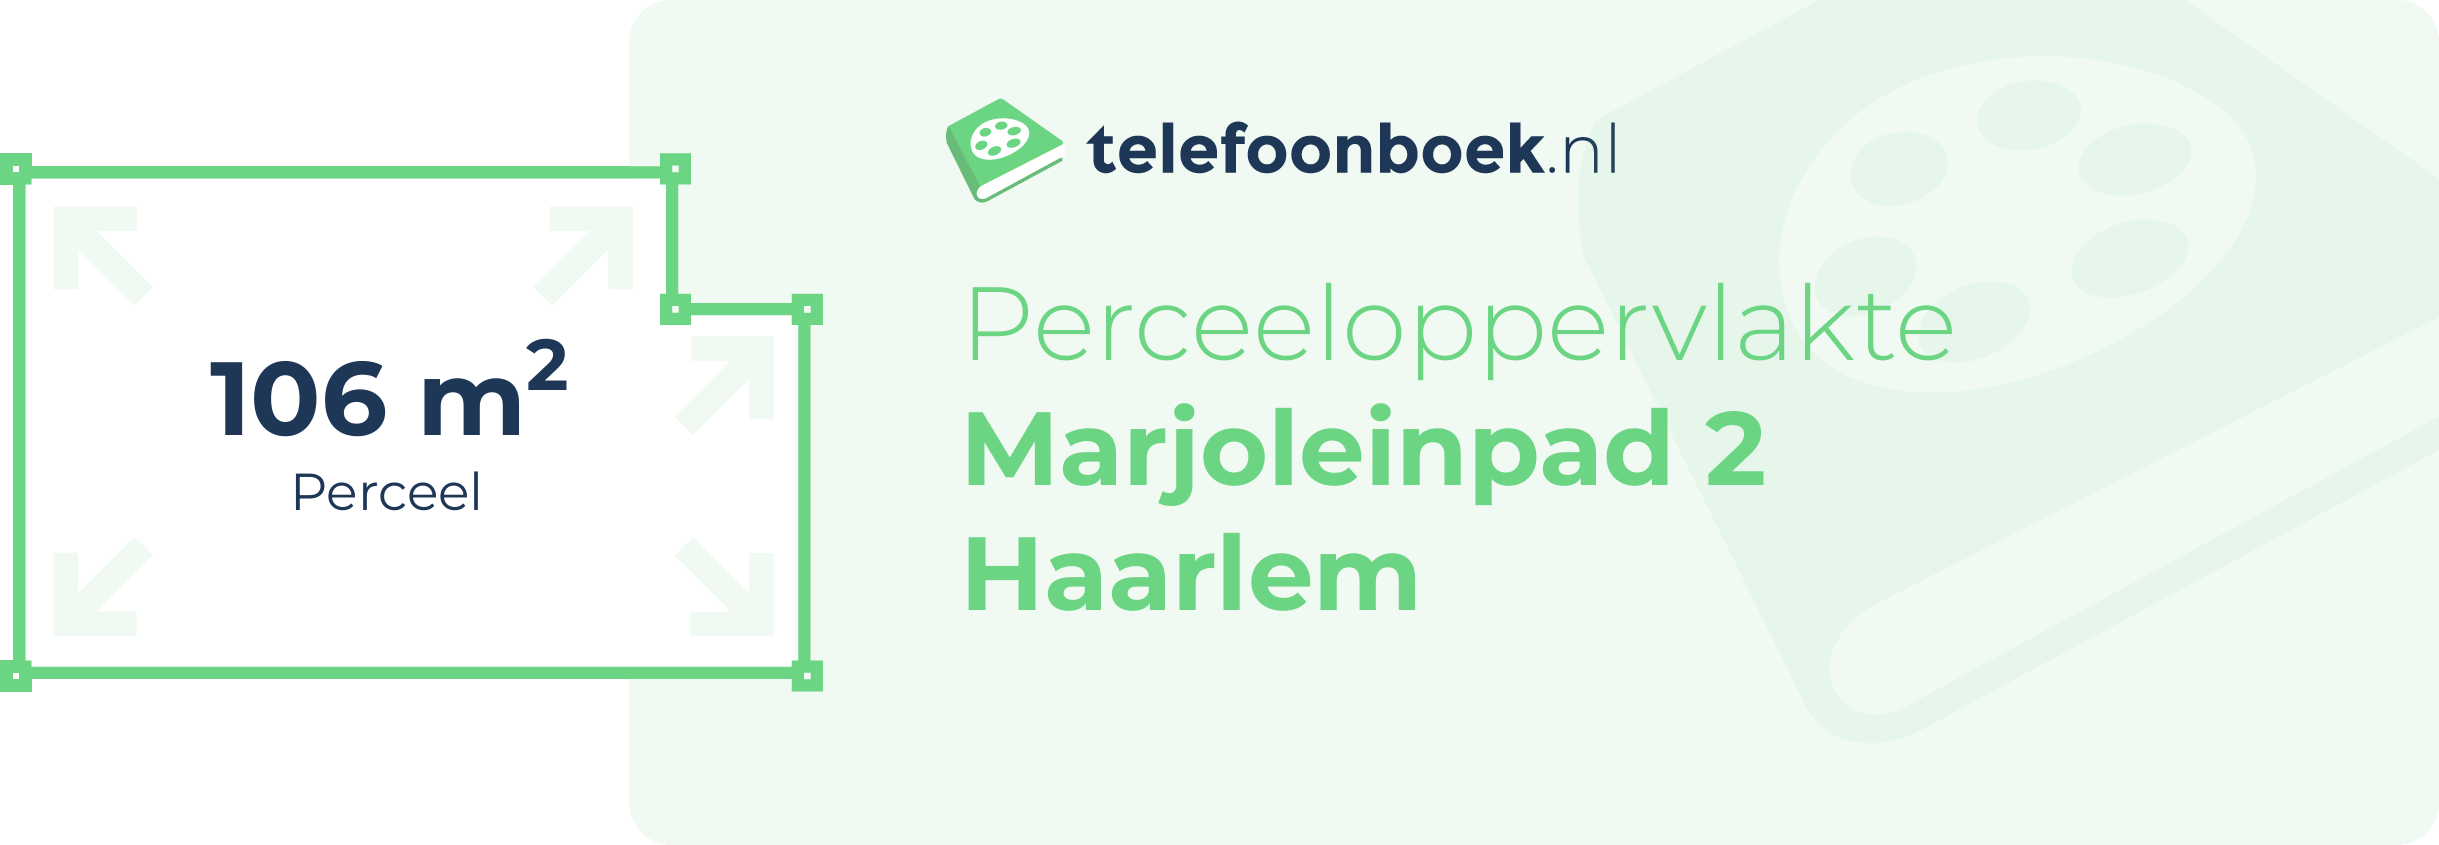 Perceeloppervlakte Marjoleinpad 2 Haarlem